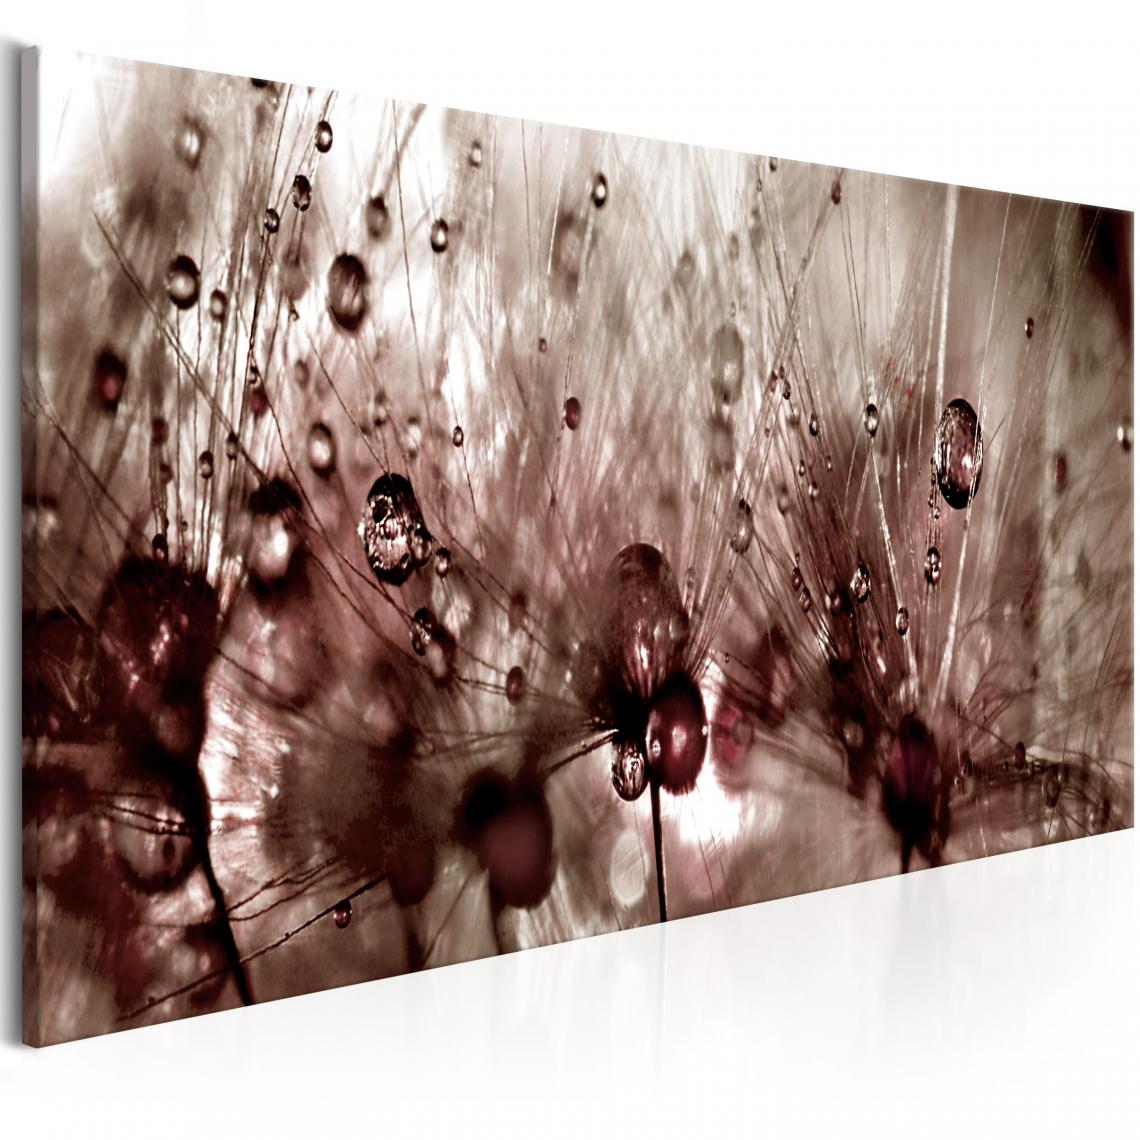 Decoshop26 - Tableau sur toile décoration murale image imprimée cadre en bois à suspendre Pissenlits après la pluie 150x50 cm 11_0005142 - Tableaux, peintures